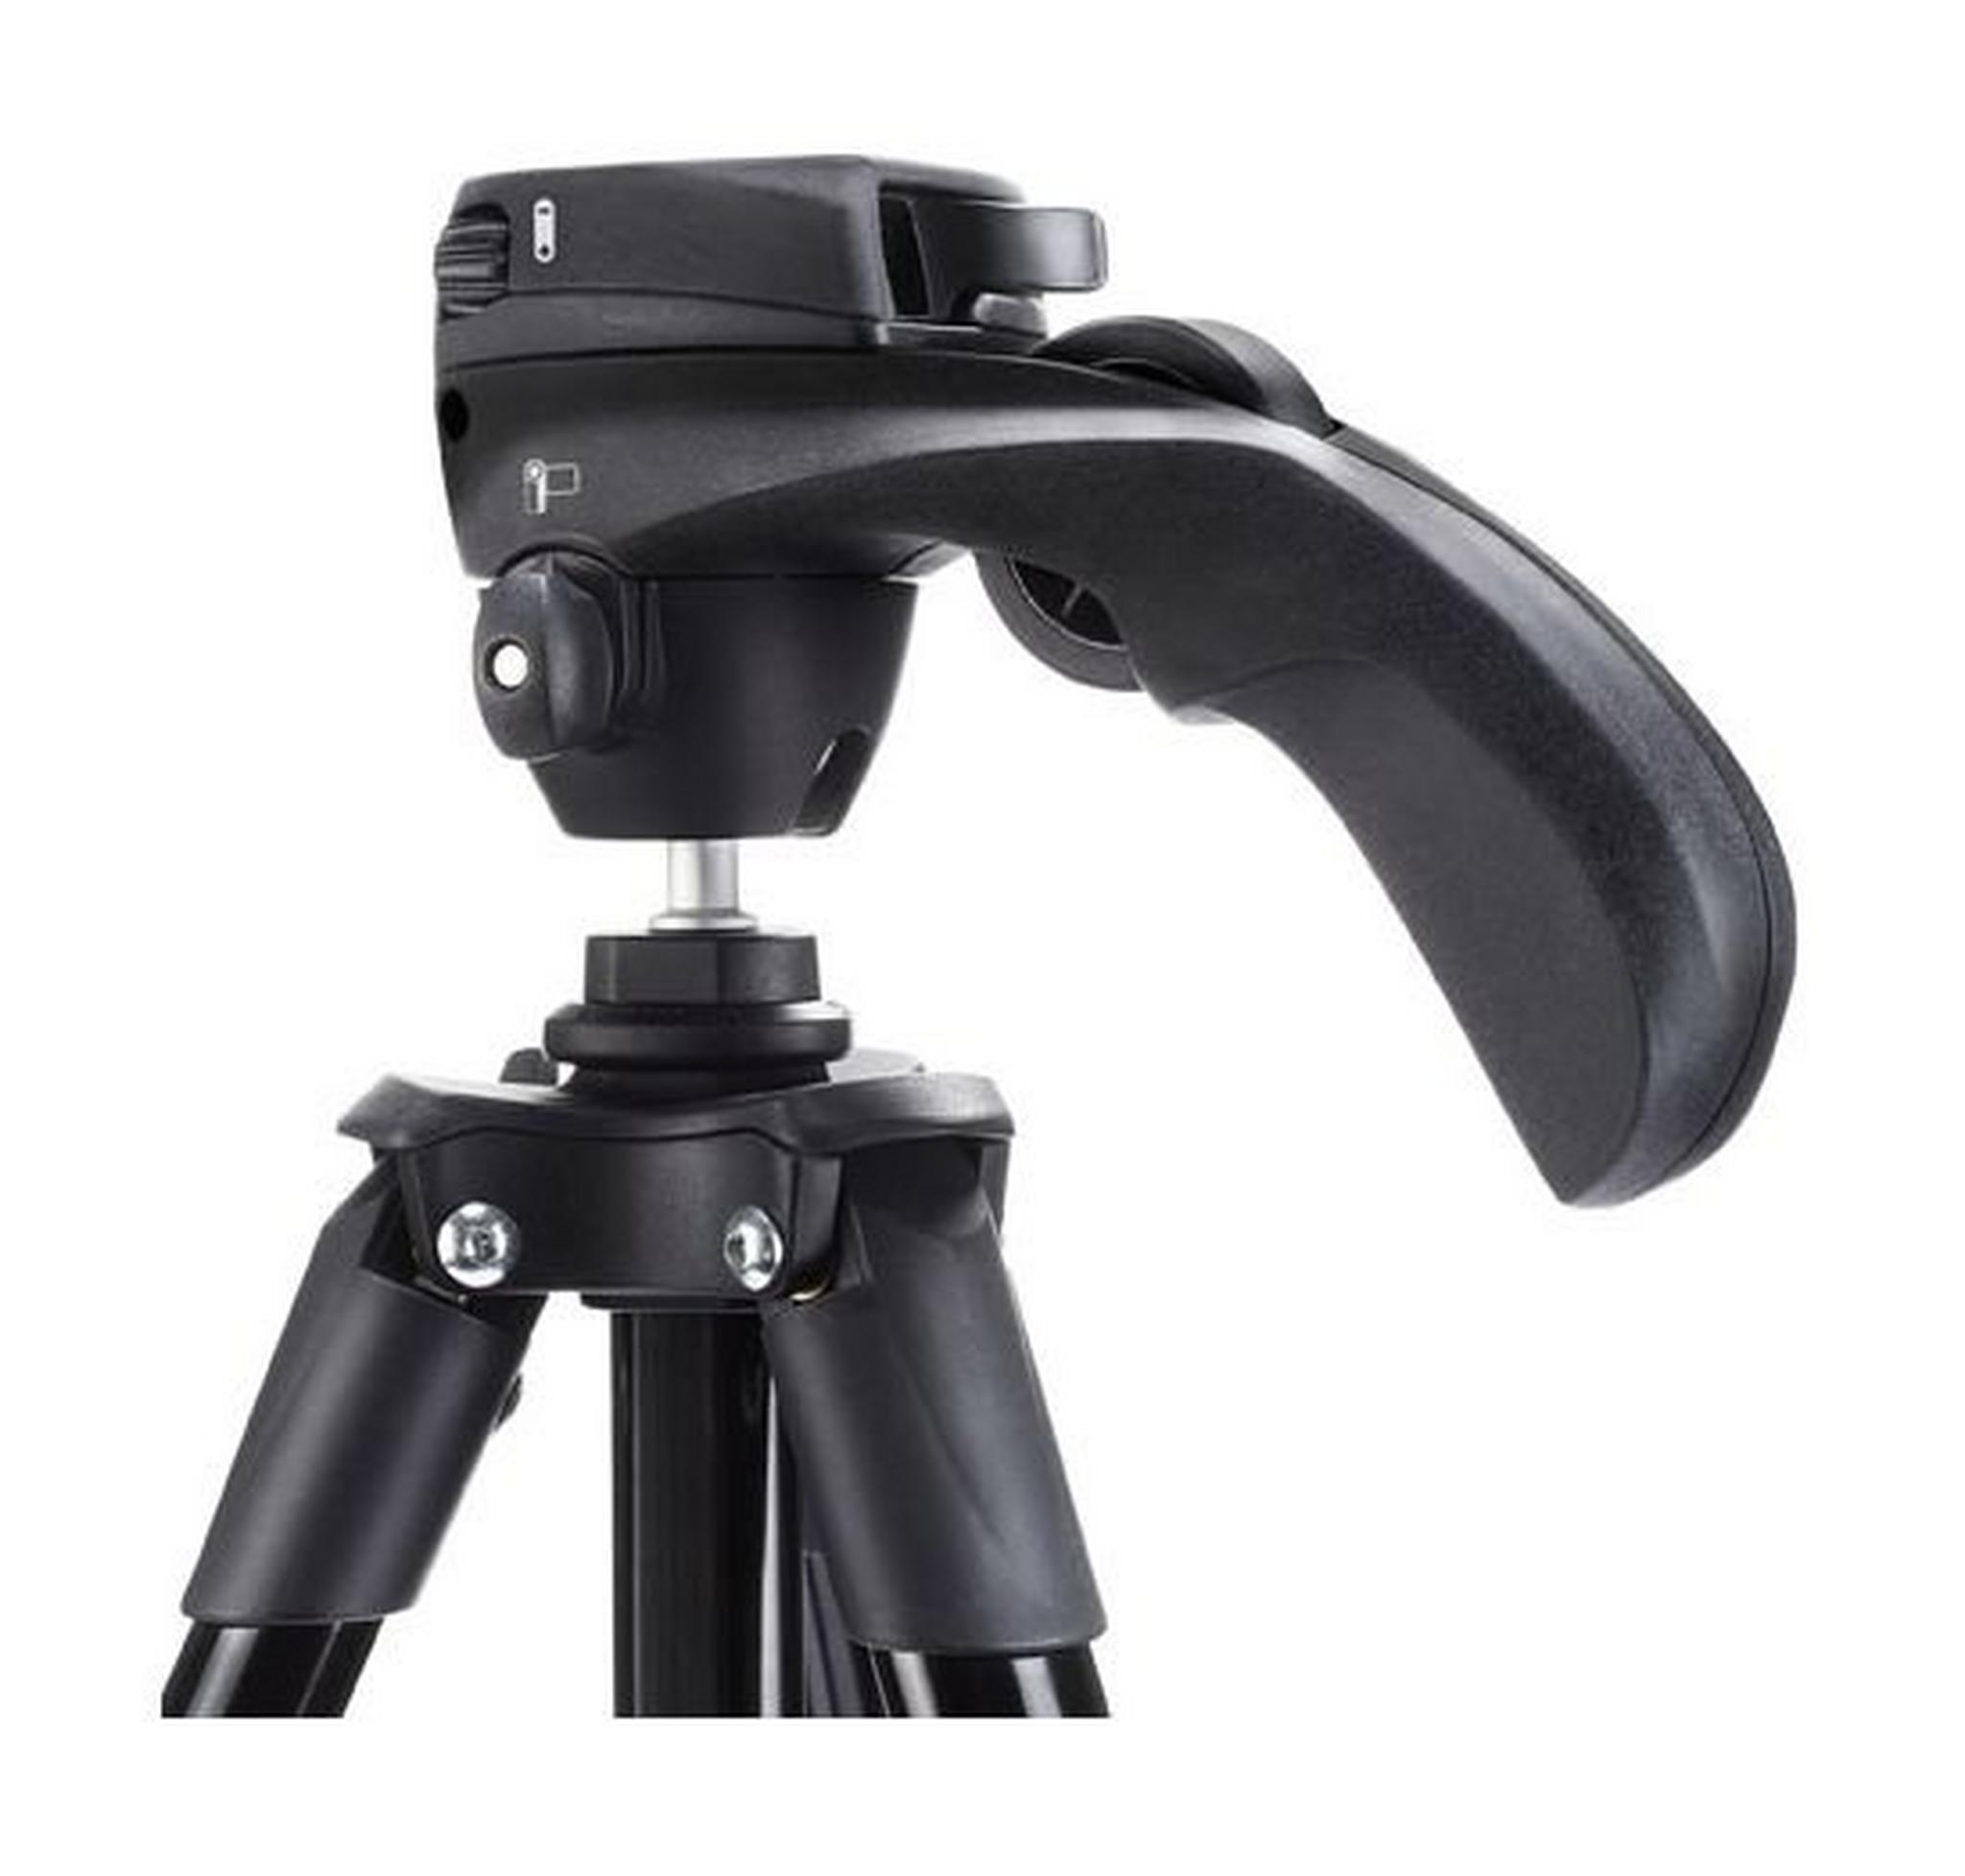 حامل كاميرا ثلاثي مدمج مع عصا تحكم من مانفروتو – ارتفاع ١٥٥ سم – أسود (MKCOMPACTACN-BK)